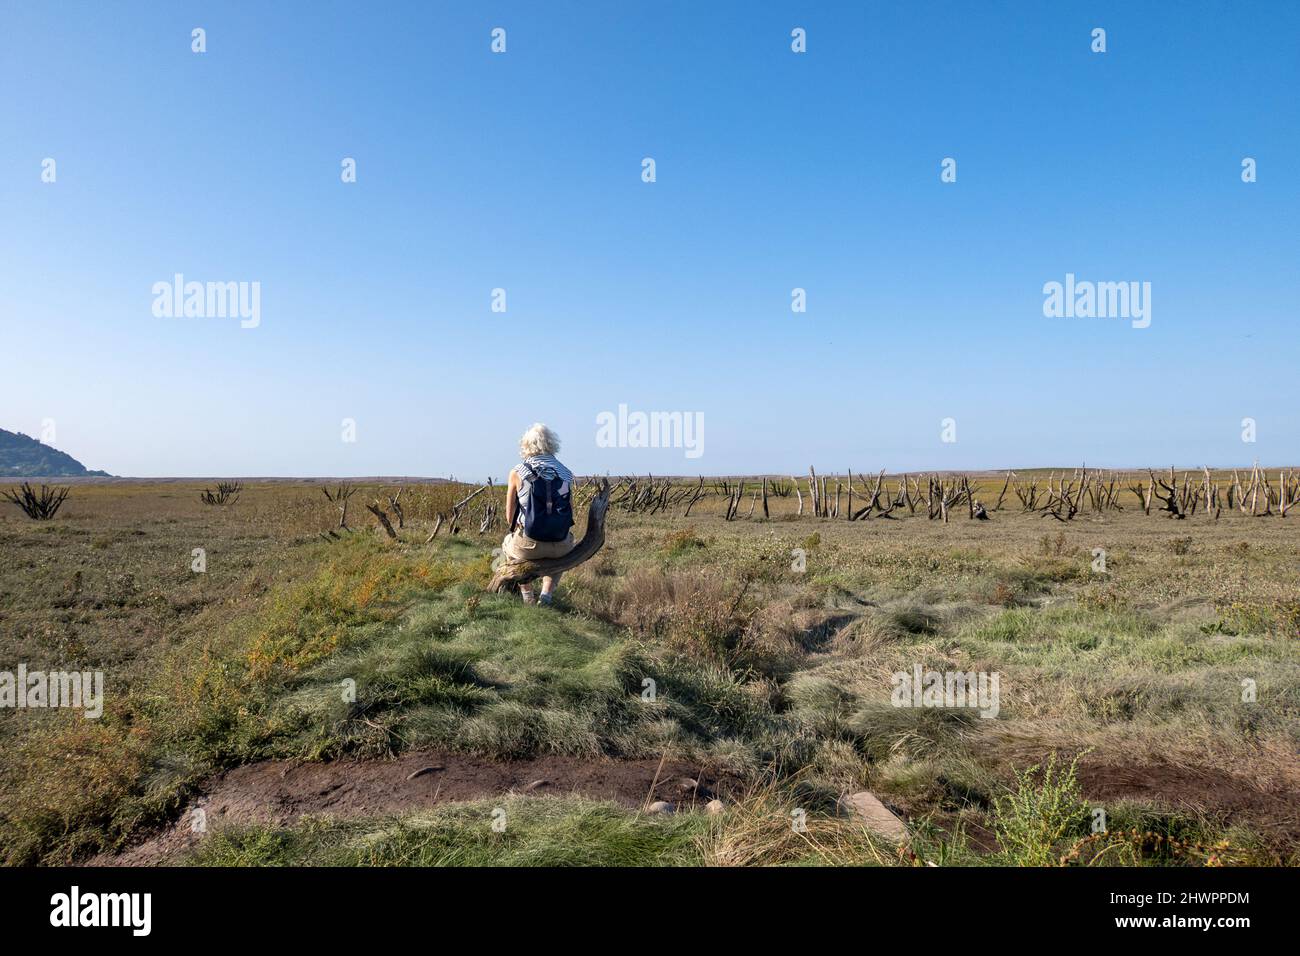 Großbritannien, England, Somerset, Porlock Marsh. Eine Frau, die nachdenklich ist, sitzt und schaut in die Ferne auf Salzmarschen am Meer. Stockfoto